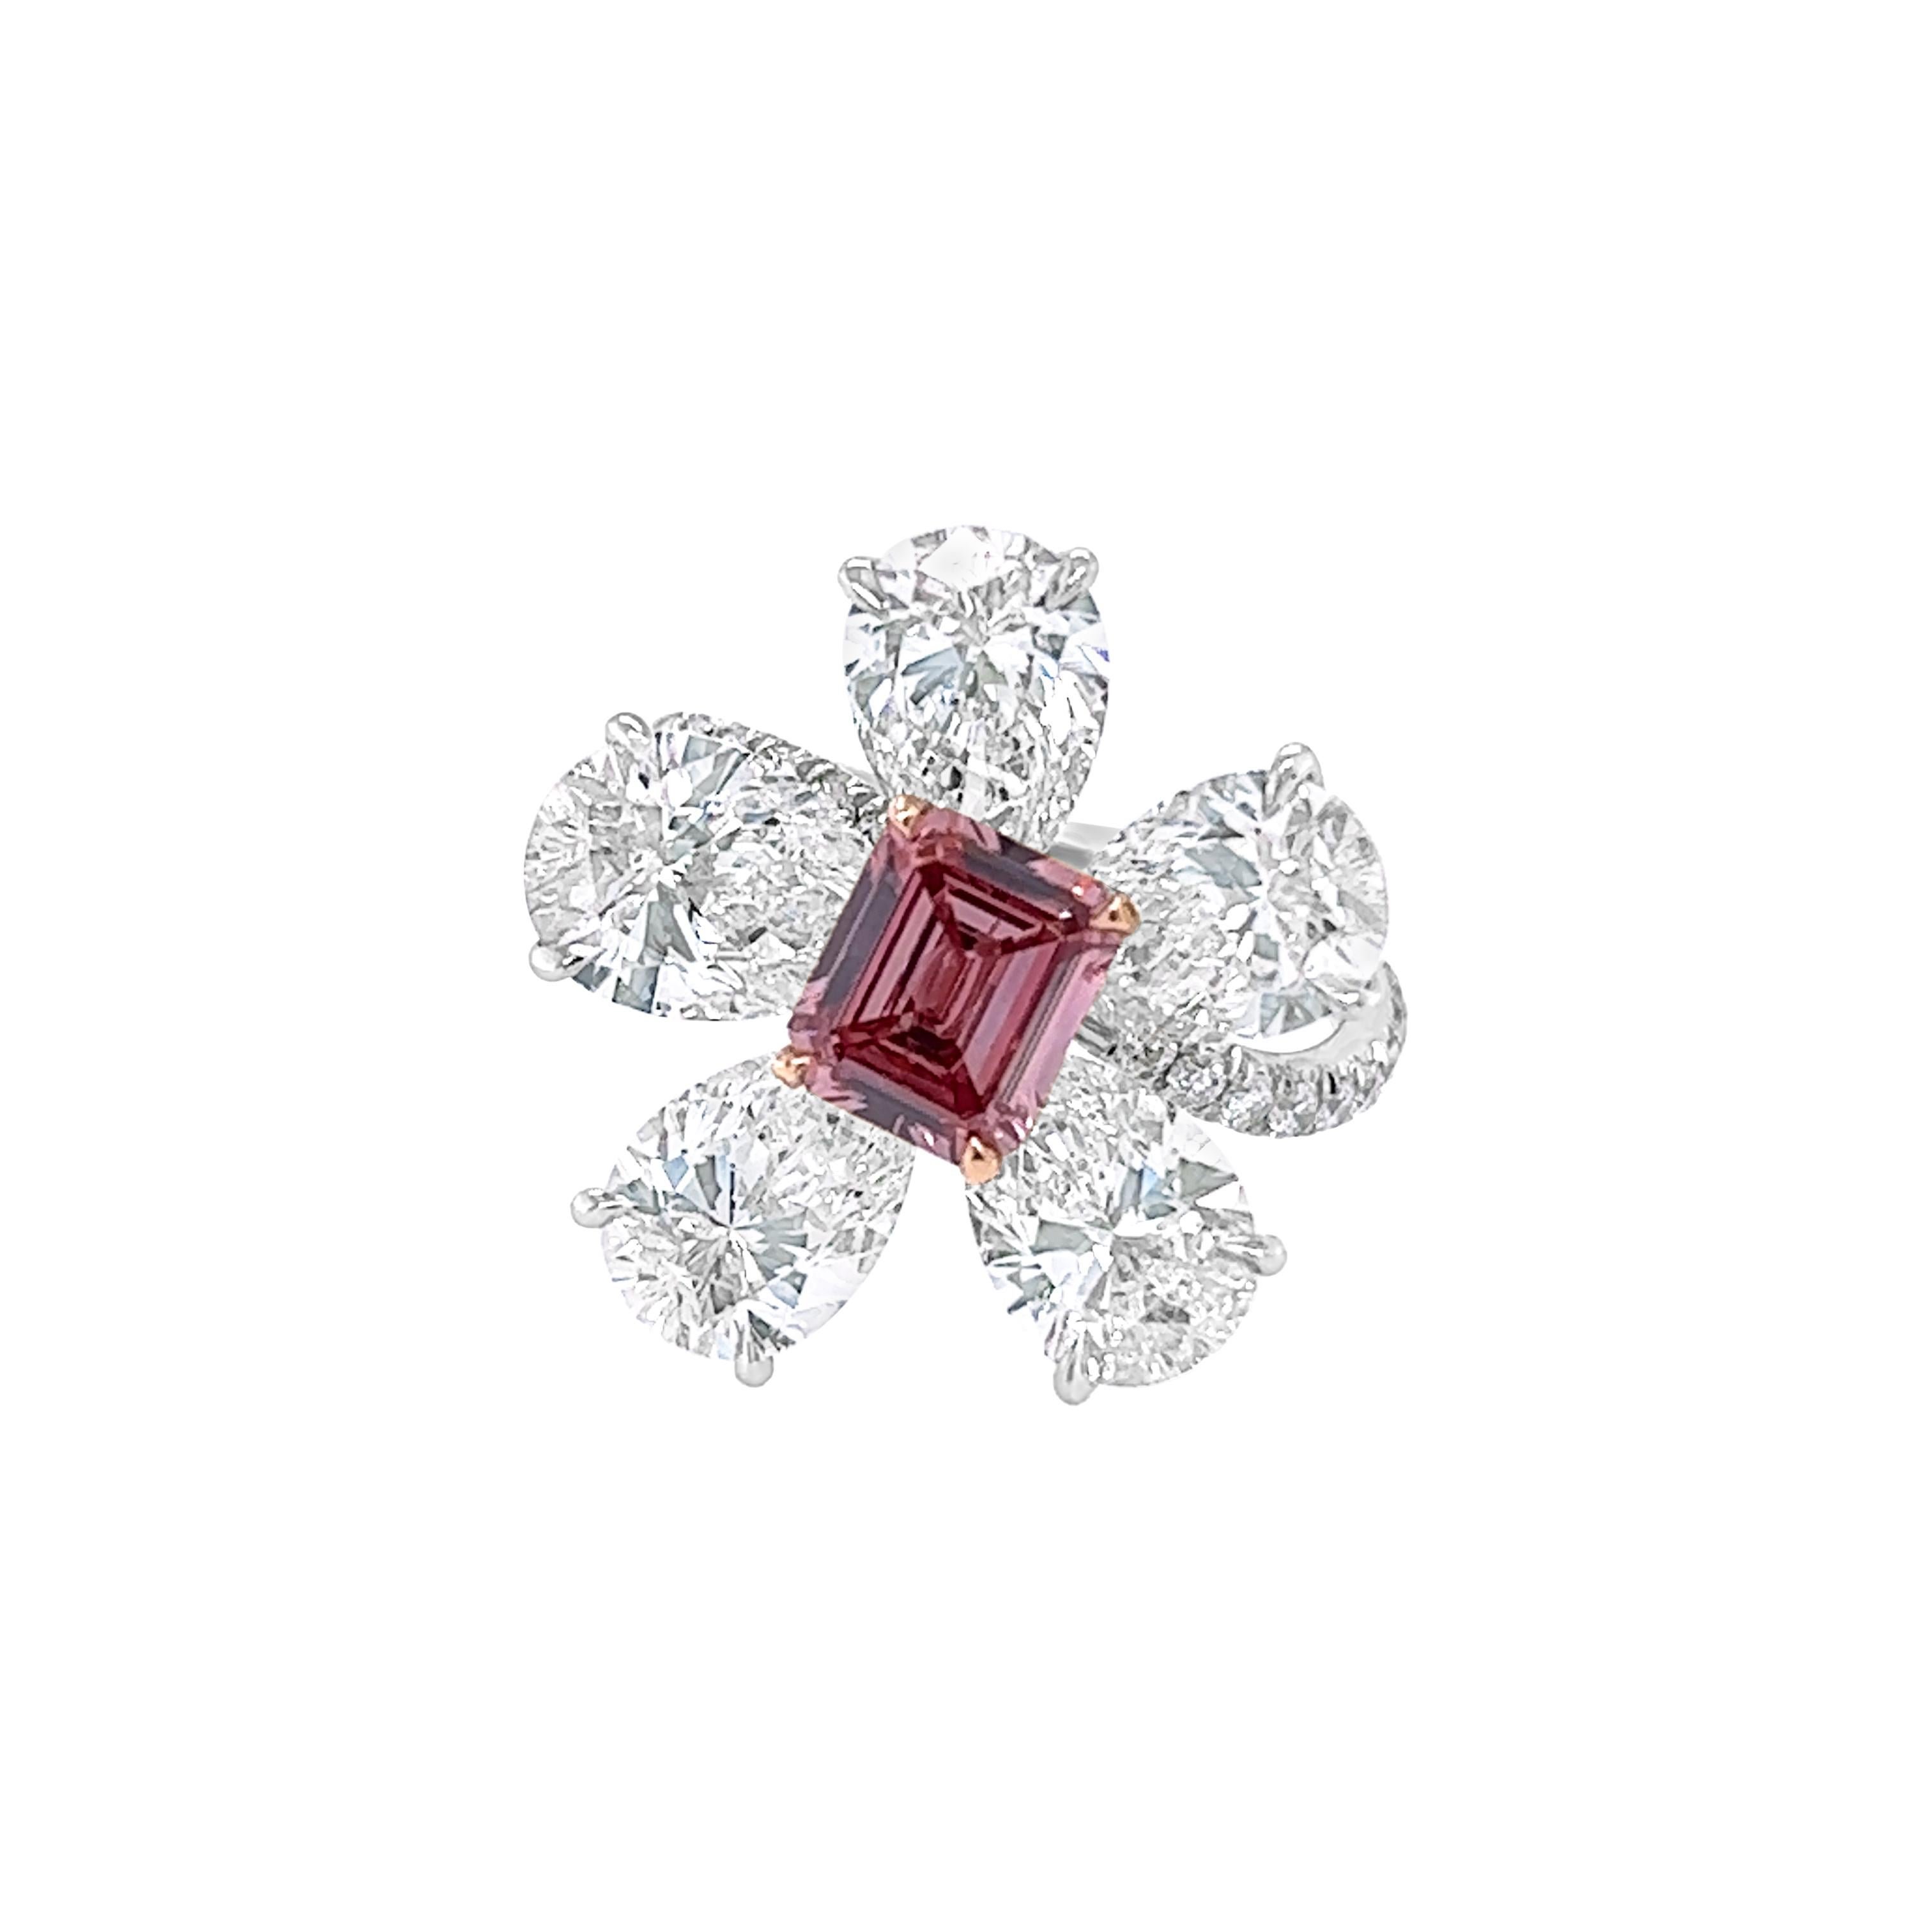 Rosenberg Diamonds & Co. 1,10 Karat Emerald Cut Fancy Deep Pink wird von einem GIA-Zertifikat begleitet. Diese  der wunderschöne, seltene Smaragdschliff ist in einer handgefertigten Fassung aus Platnium und 18 Karat Roségold gefasst. Dieser Ring